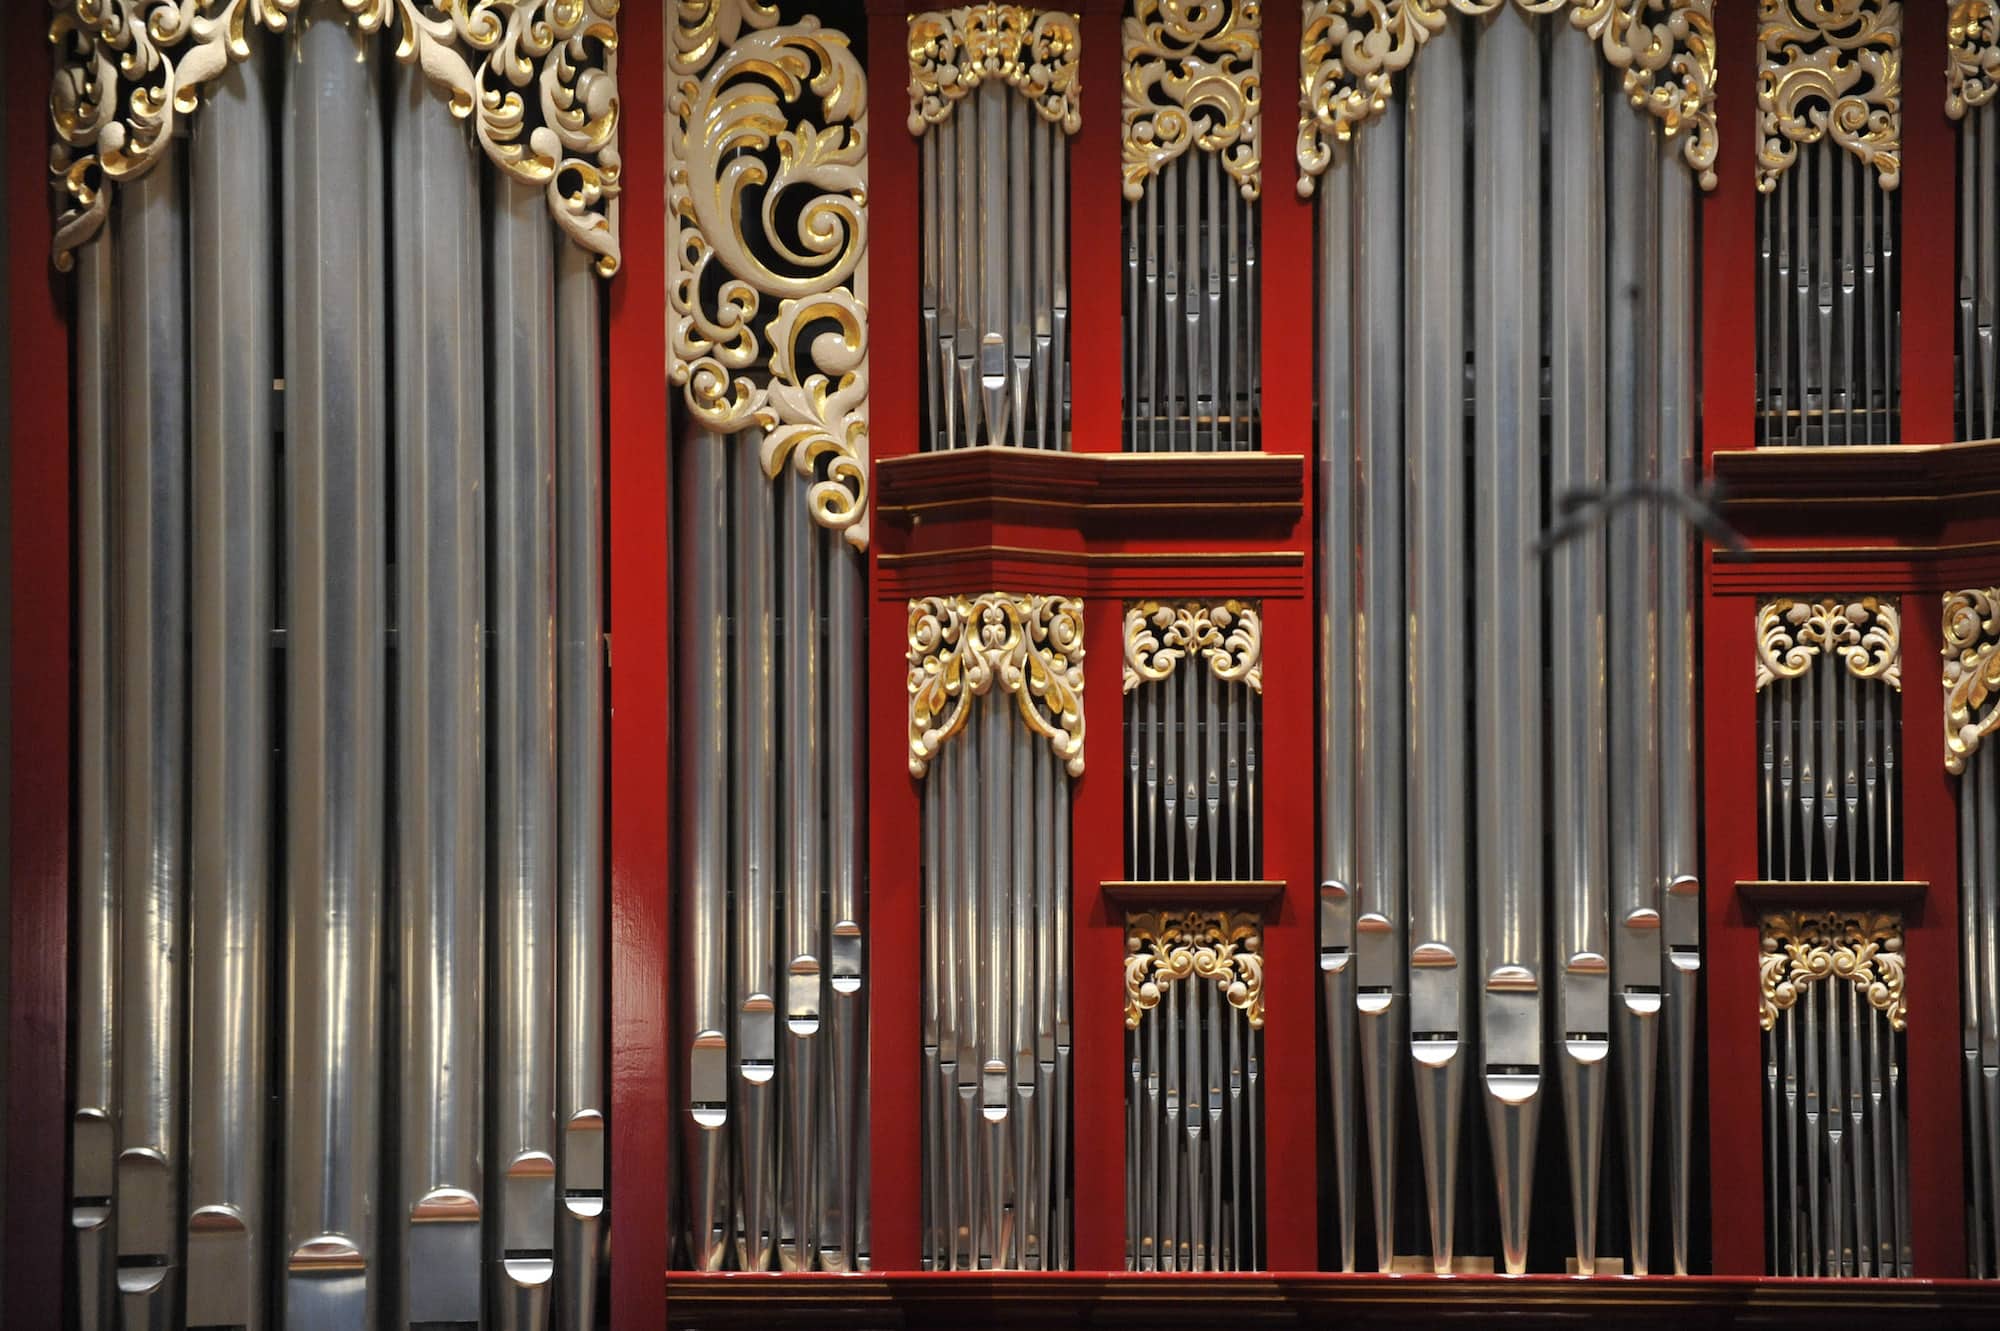 Detail of organ pipes